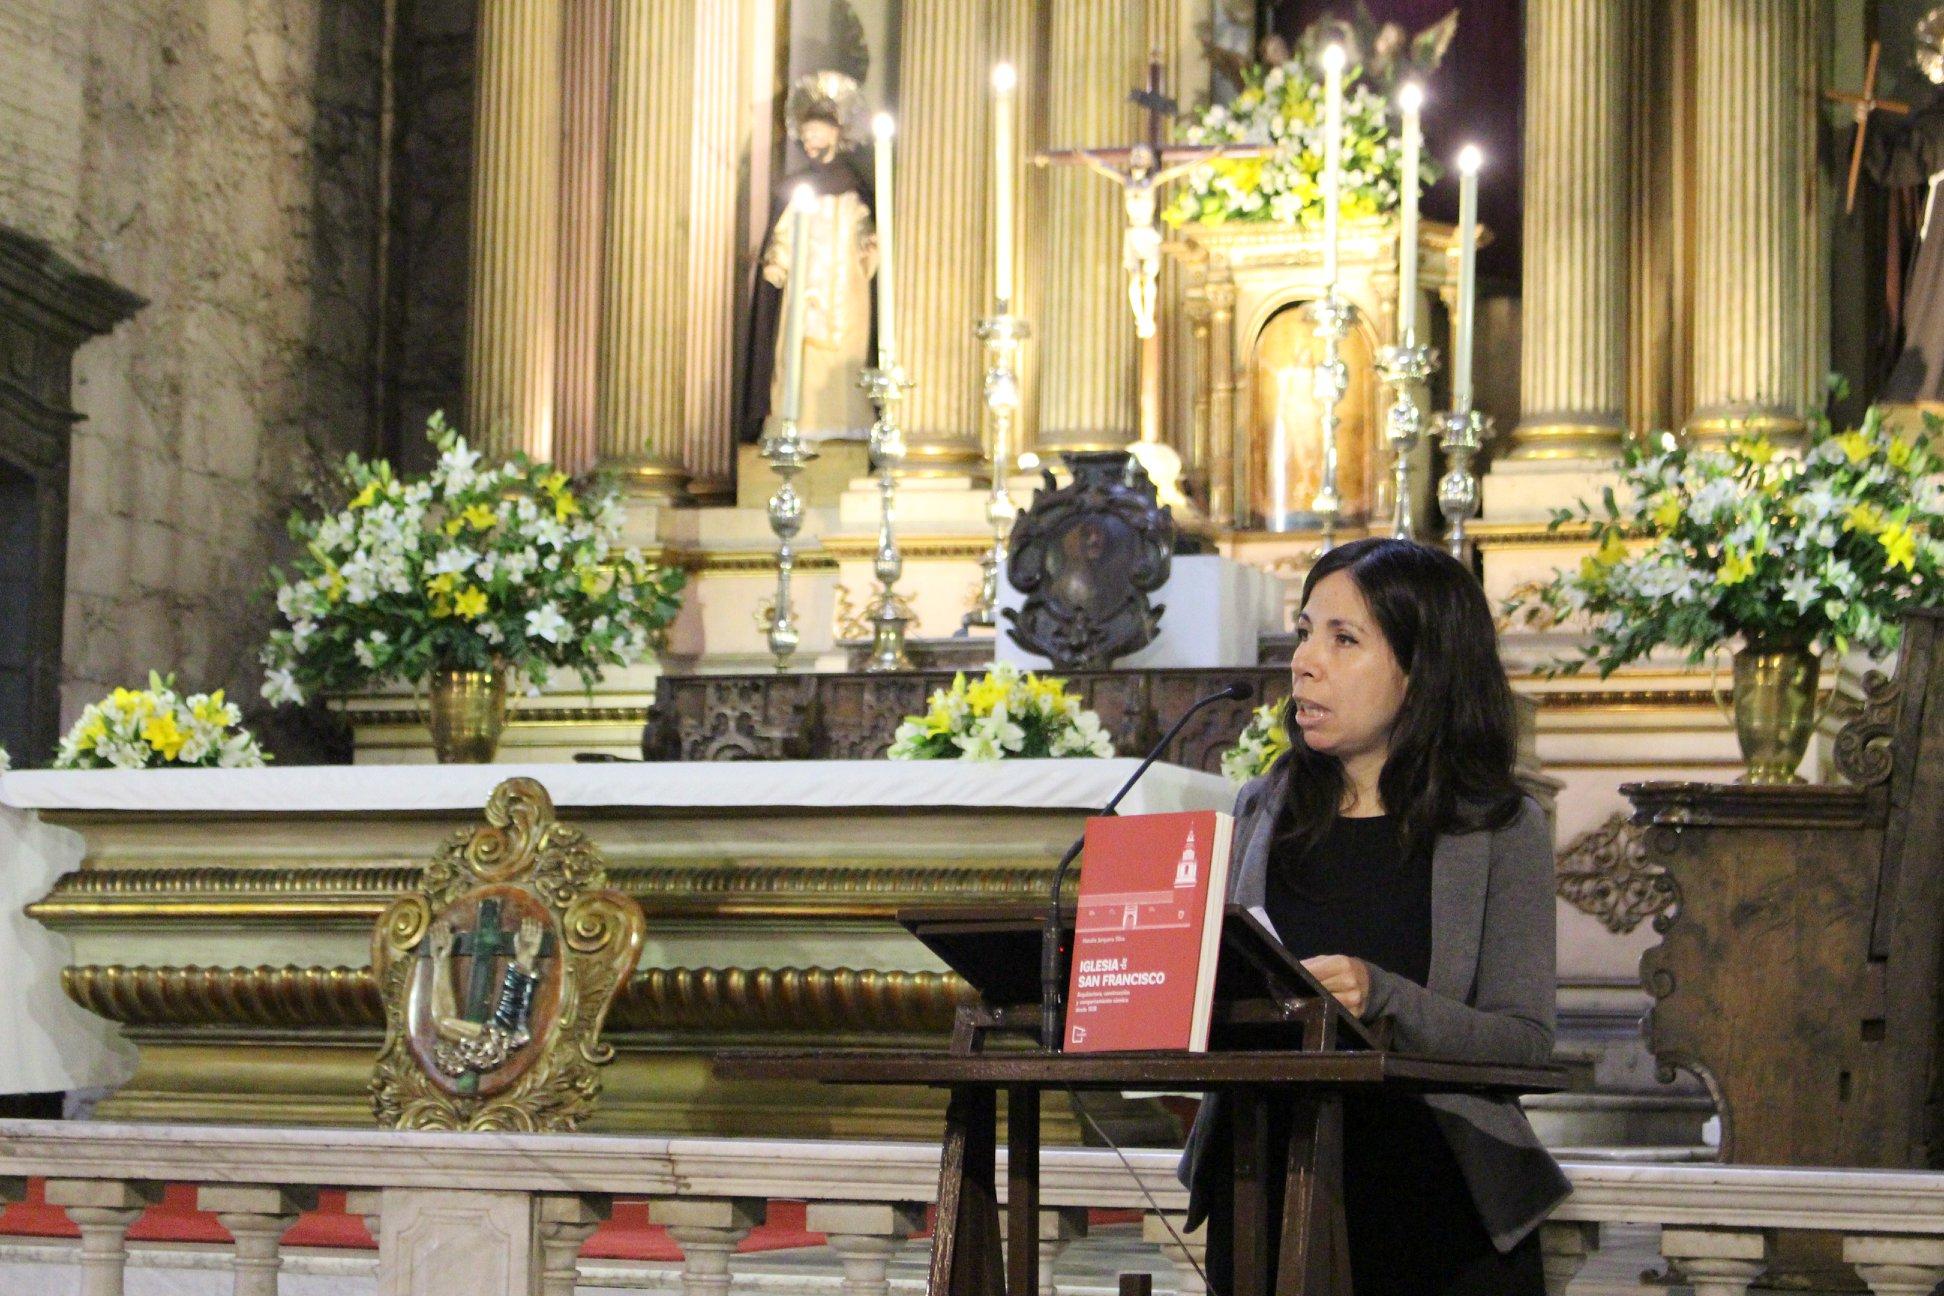 La académica Natalia Jorquera repasó algunos de los aspectos más interesantes de la iglesia y que son detallados en el primer capítulo del libro.